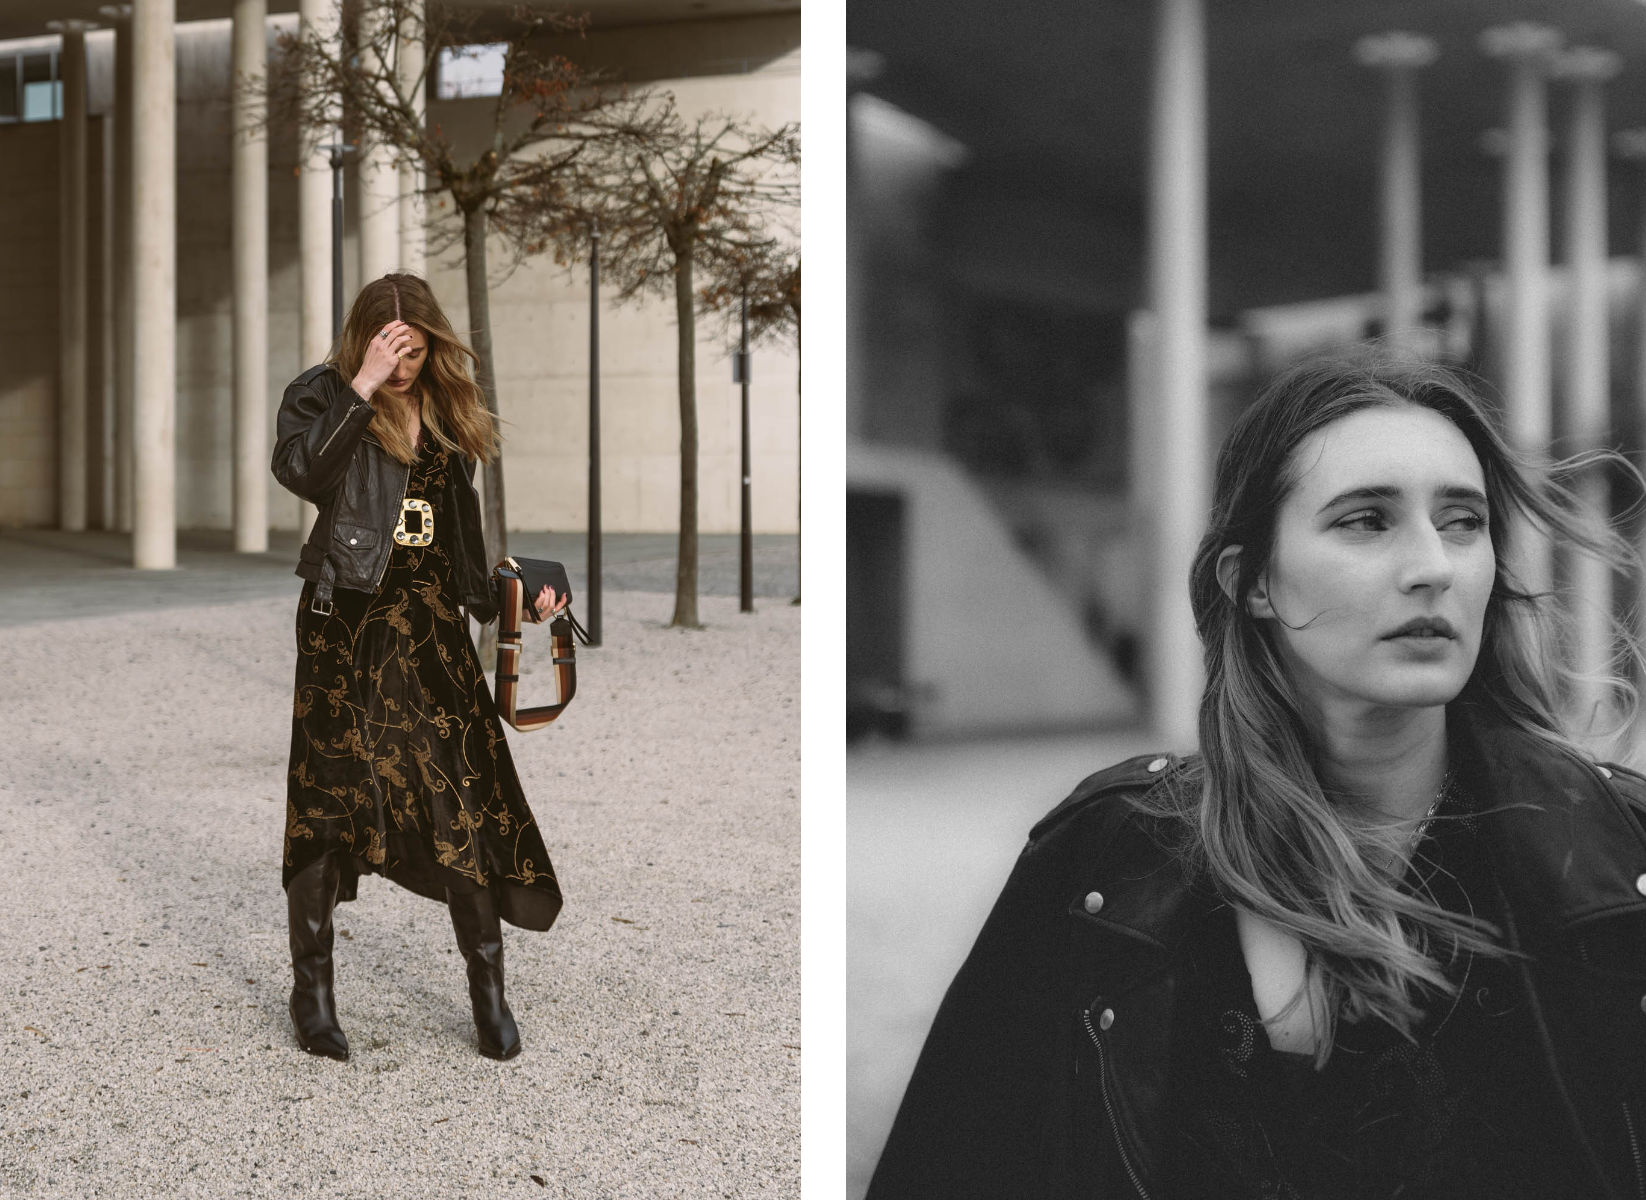 Black Maxi Dress | Lisa Fiege